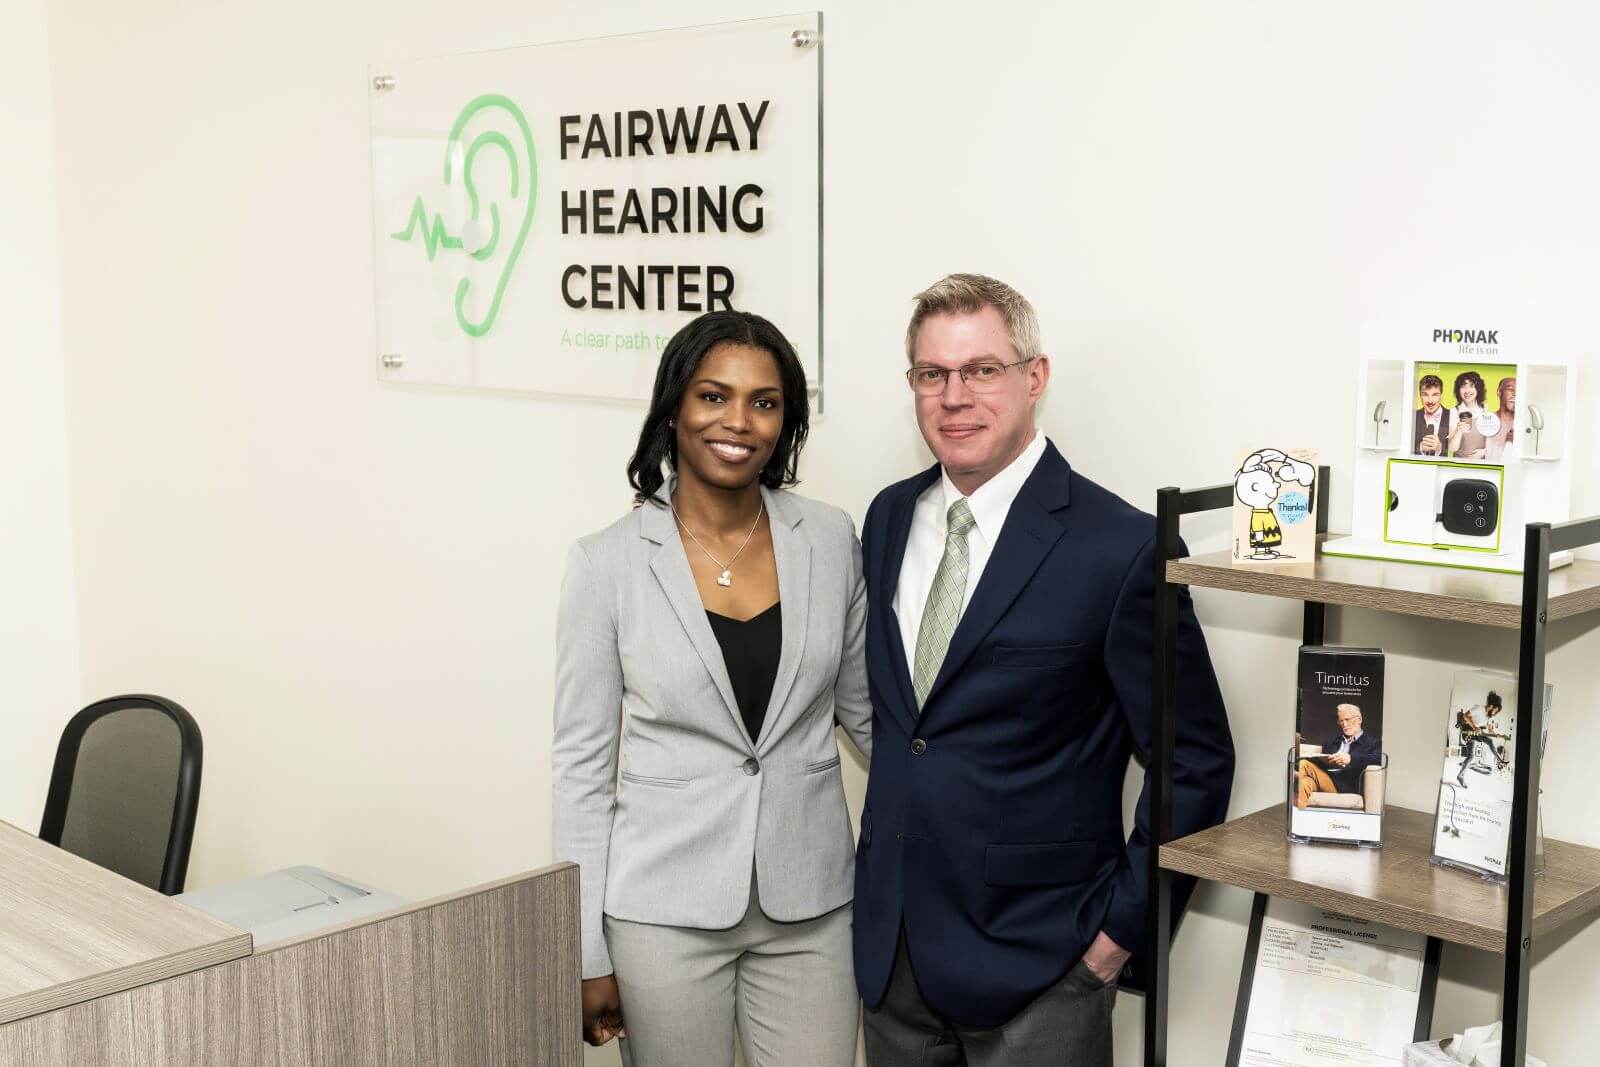 Scott Mehrer and Kivoney Mehrer in Fairway Hearing Center Office